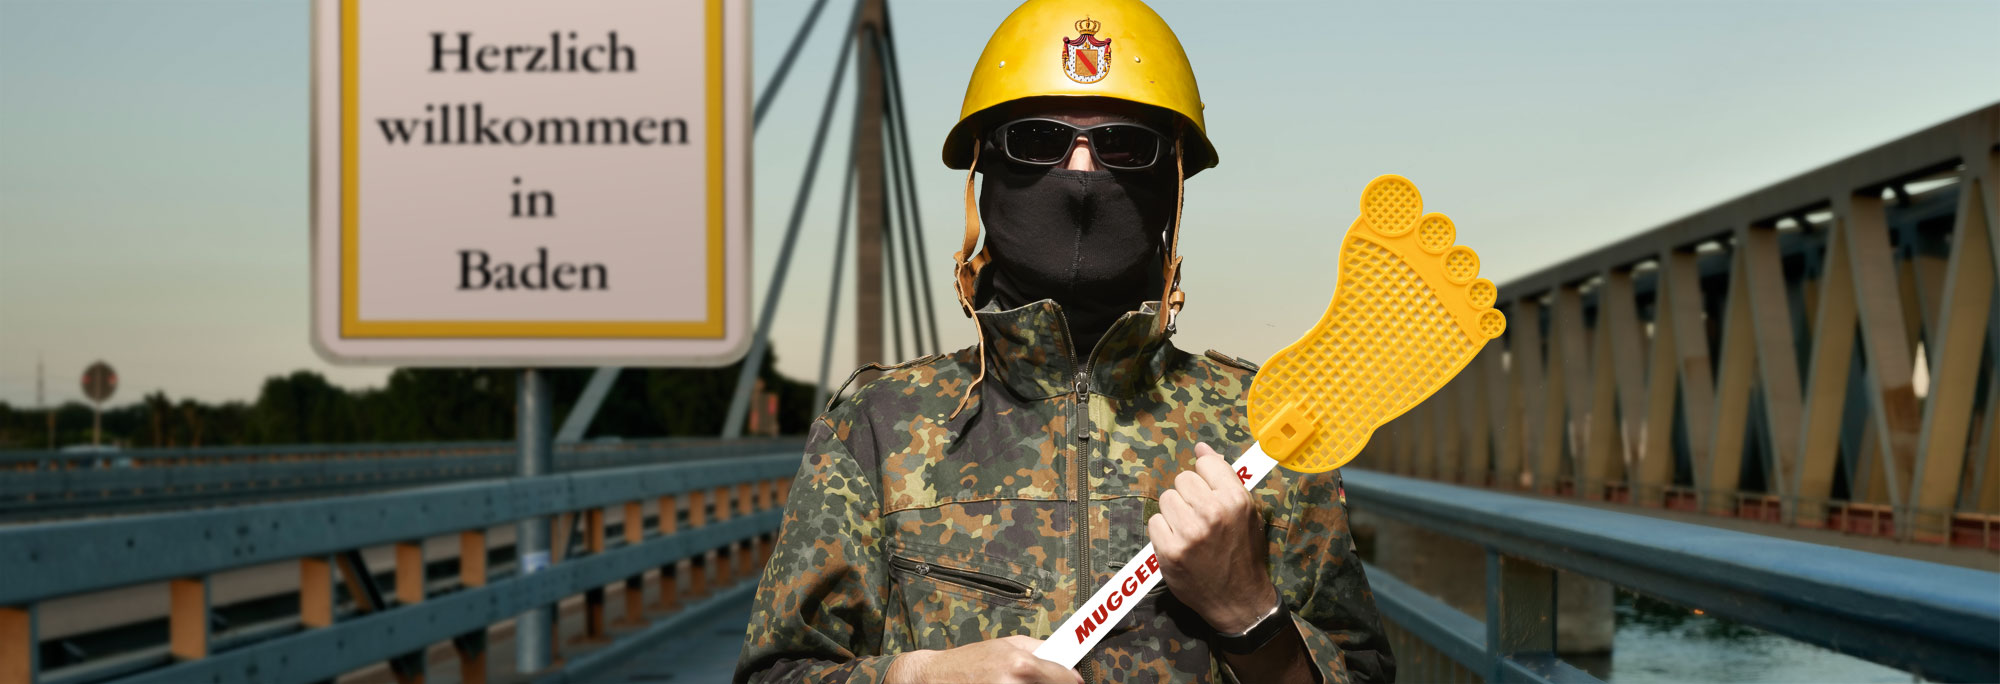 satirische Darstellung eines Uniformierten mit Muggebadscher an der badischen Landesgrenze